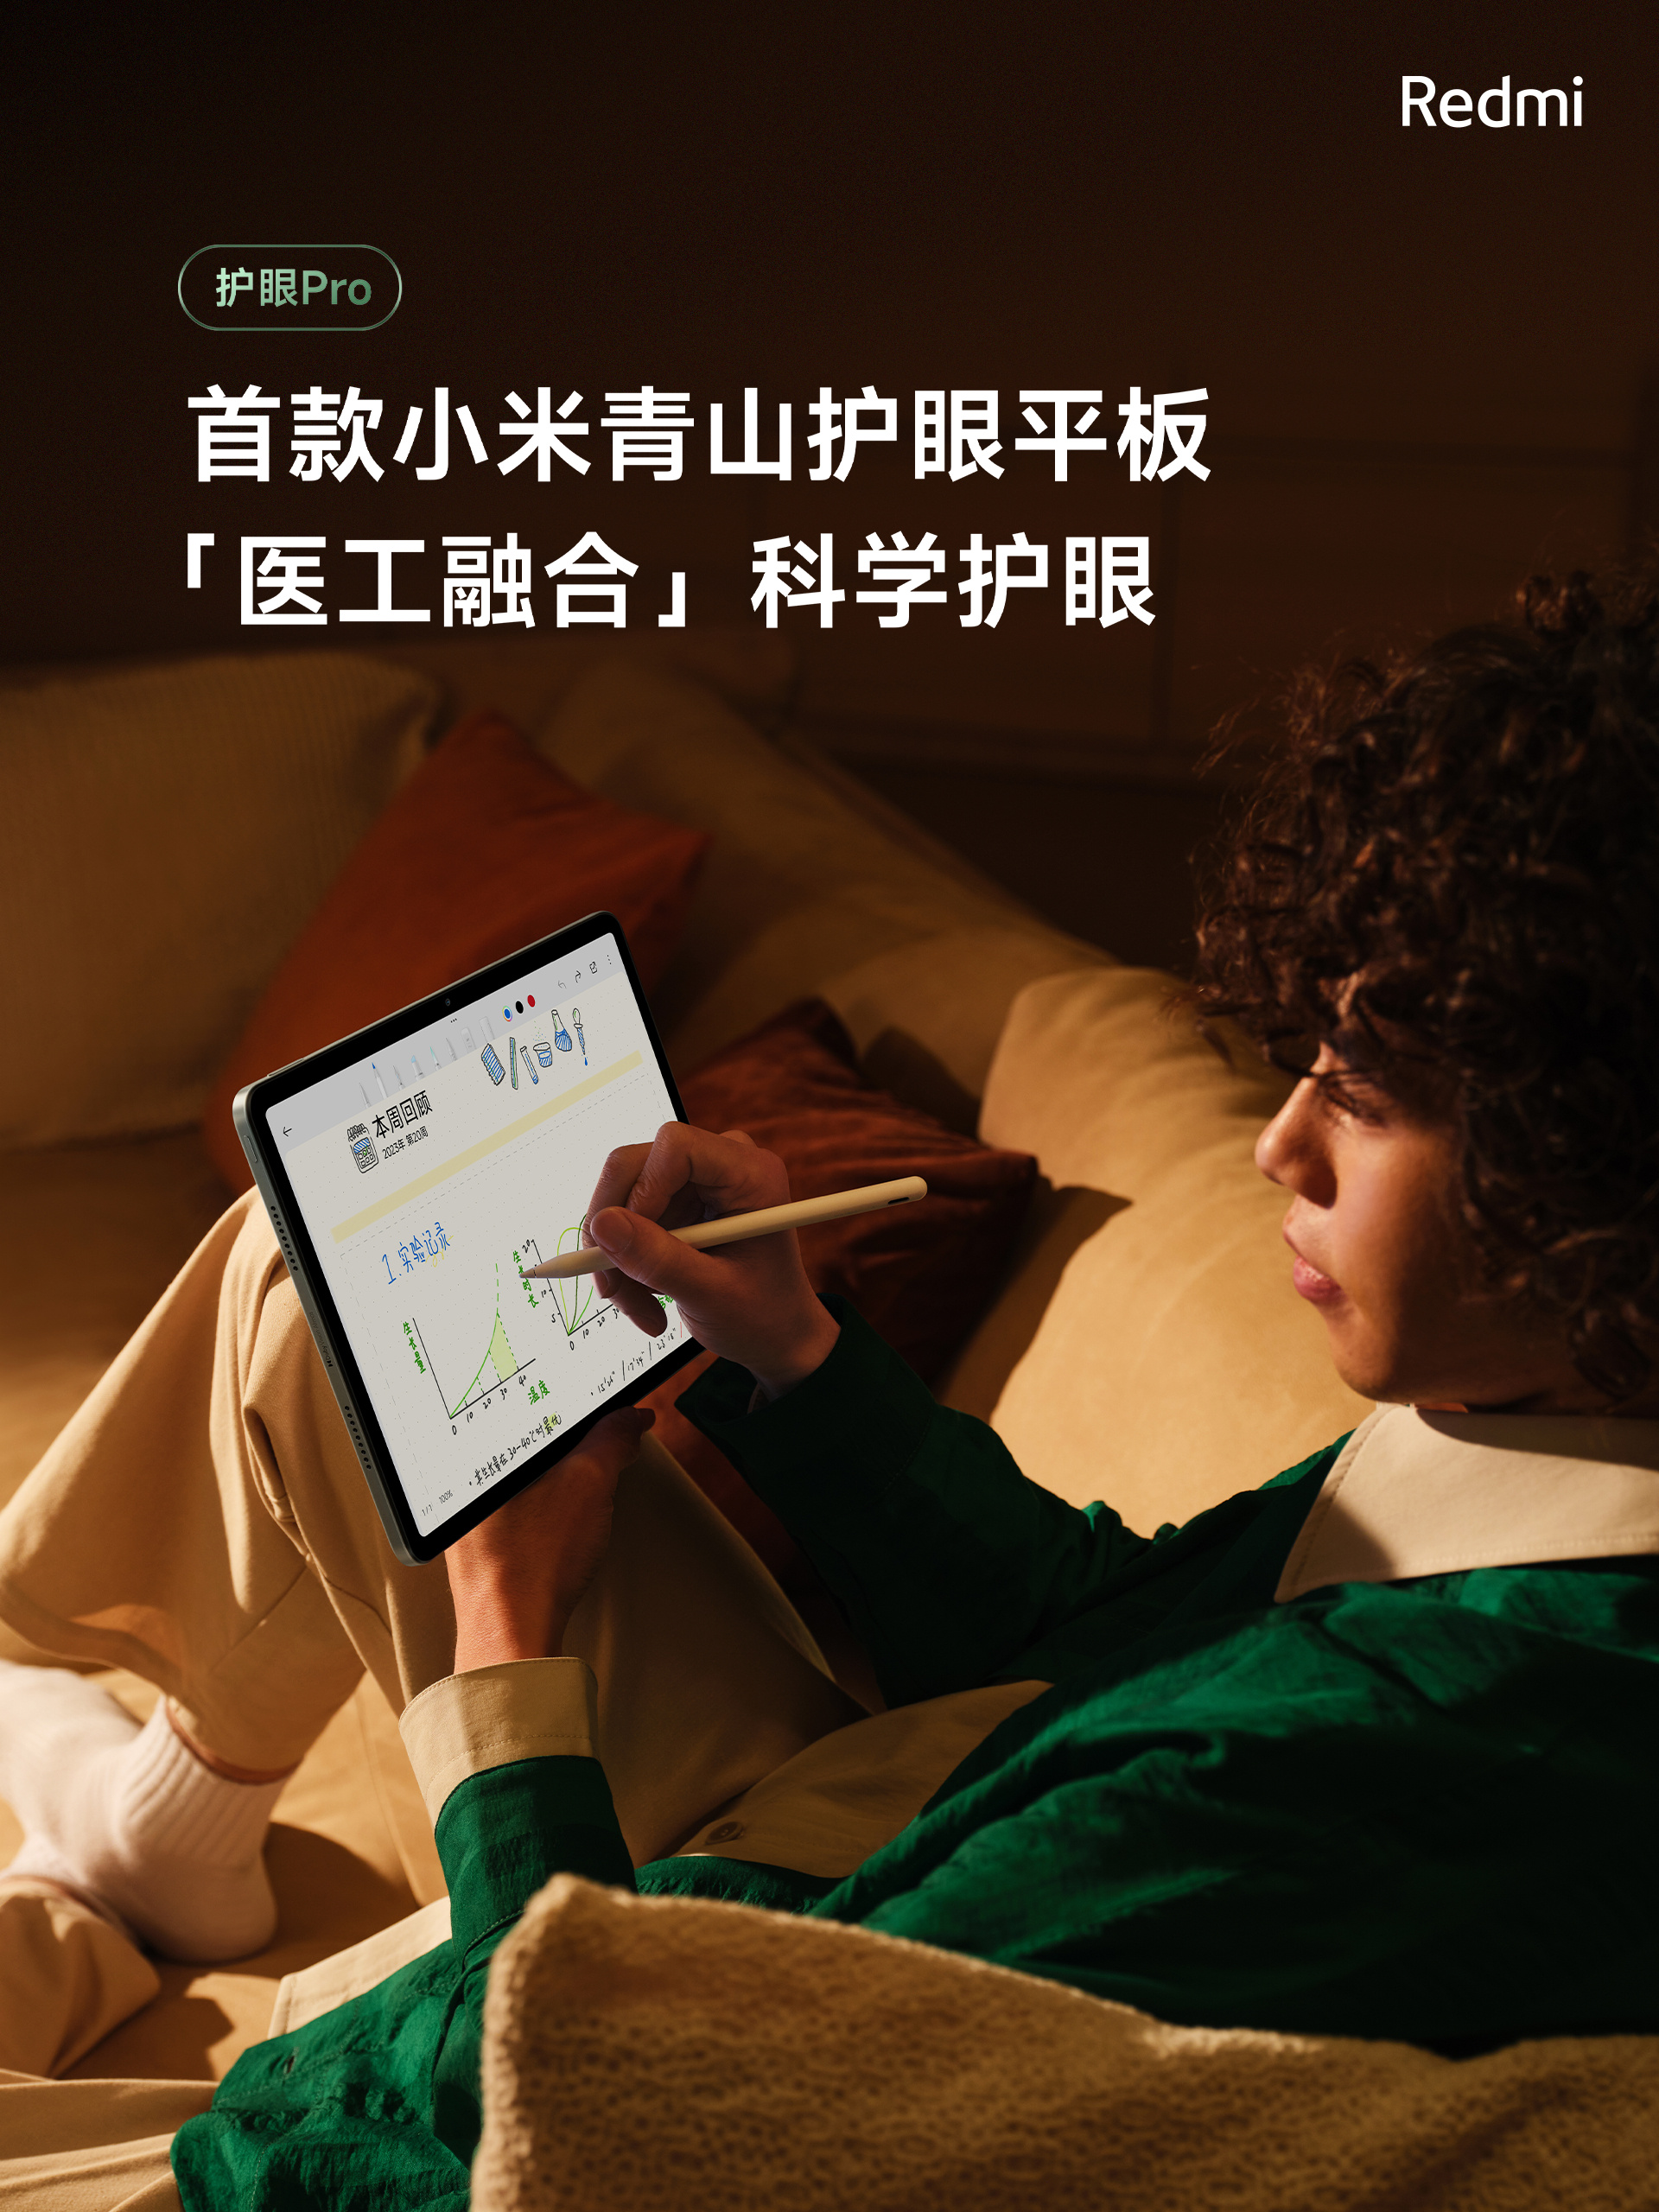 Xiaomi ra mắt máy tính bảng đẹp như iPad, chip Snapdragon 7s Gen 2 mạnh mẽ, pin 10.000mAh, giá chỉ hơn 5 triệu đồng- Ảnh 5.